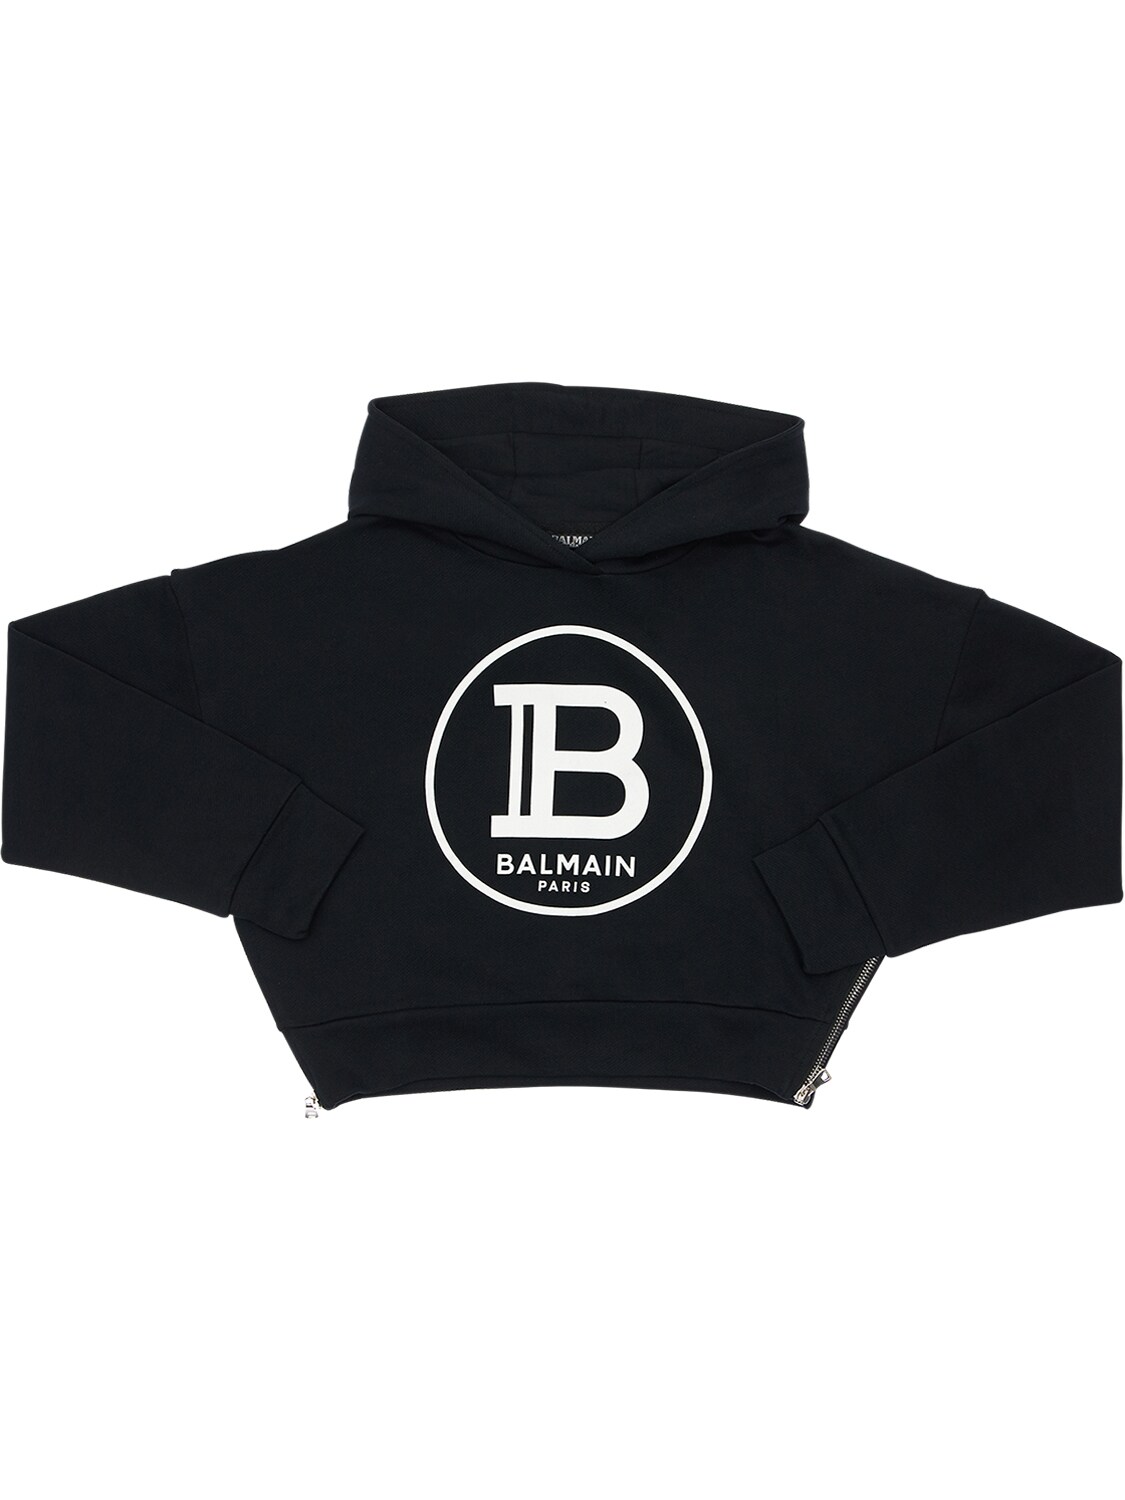 Balmain Kids' Cropped Sweatshirt Hoodie W/ Flock Print In Black